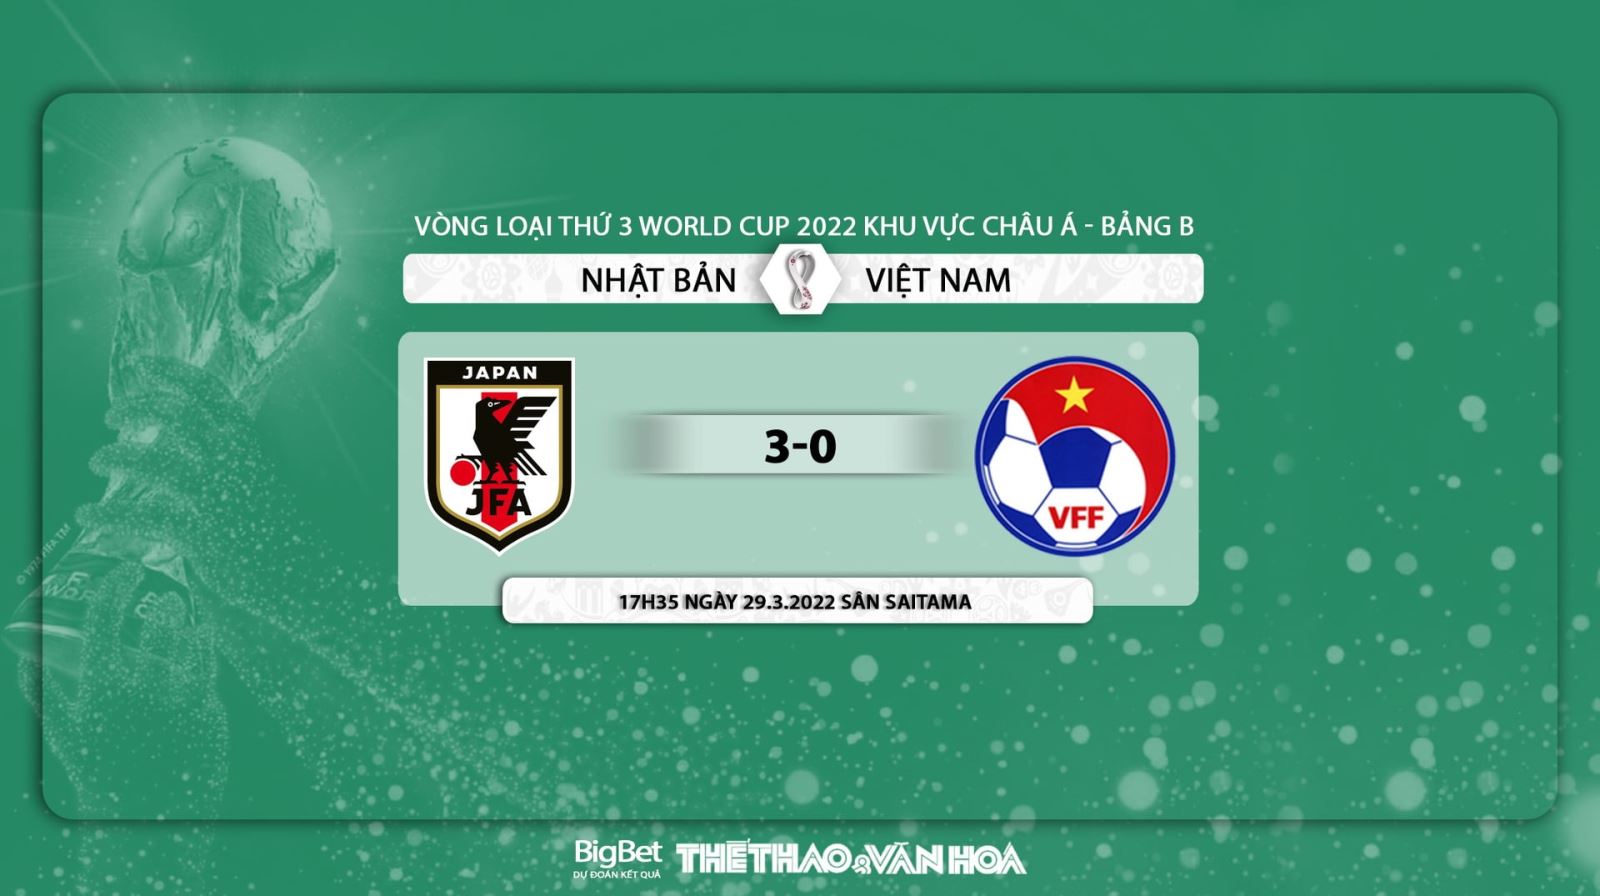 Nhật Bản vs Việt Nam, nhận định kết quả, nhận định bóng đá Nhật Bản vs Việt Nam, nhận định bóng đá, Nhật Bản, Việt Nam, keo nha cai, dự đoán bóng đá, World Cup 2022